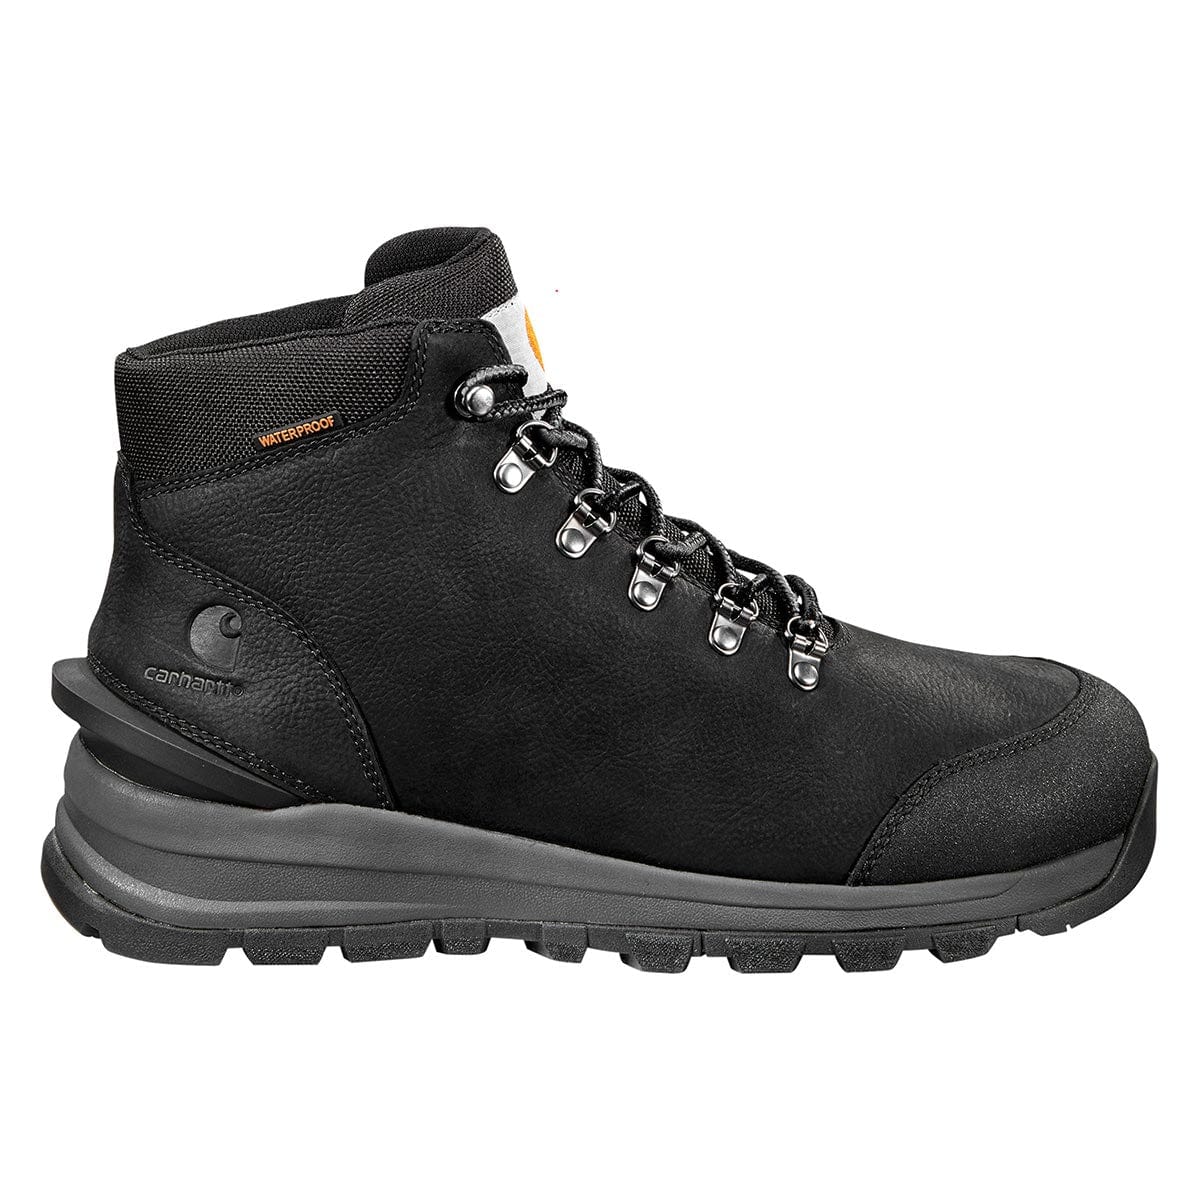 Carhartt Men's Gilmore Waterproof 5" Hiker Boots - Black